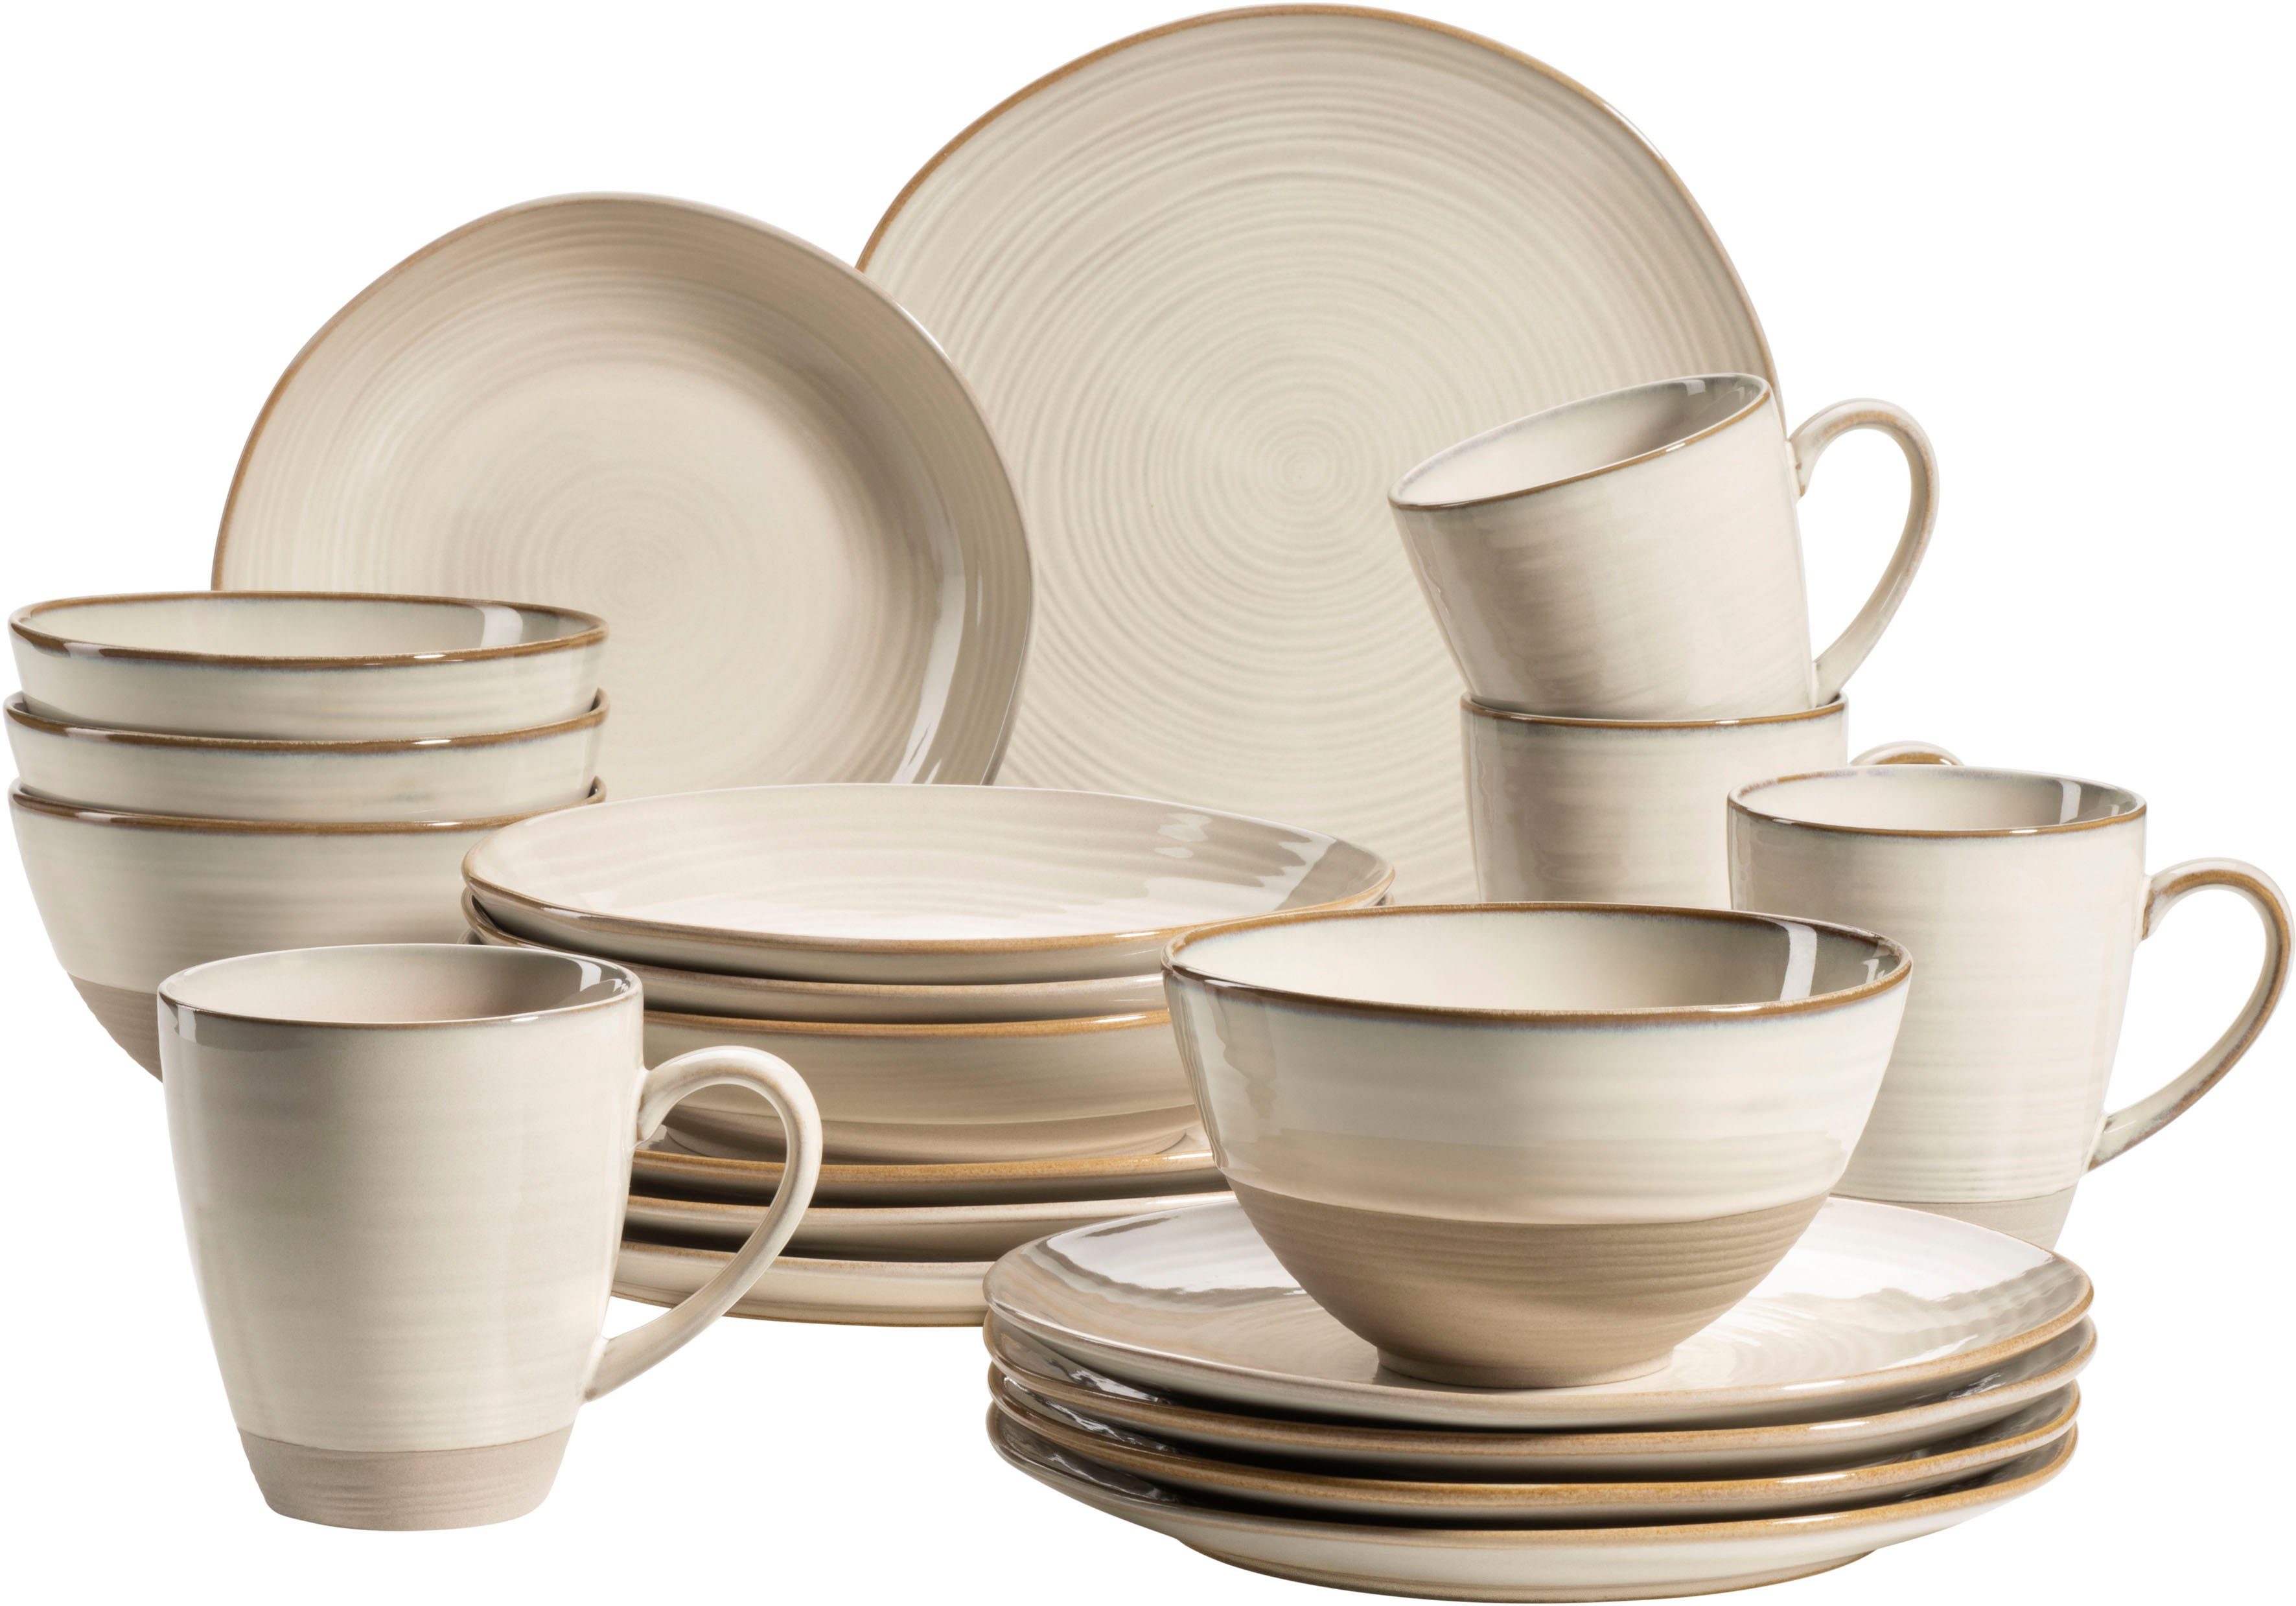 Beige Keramik Geschirr-Sets kaufen OTTO | online